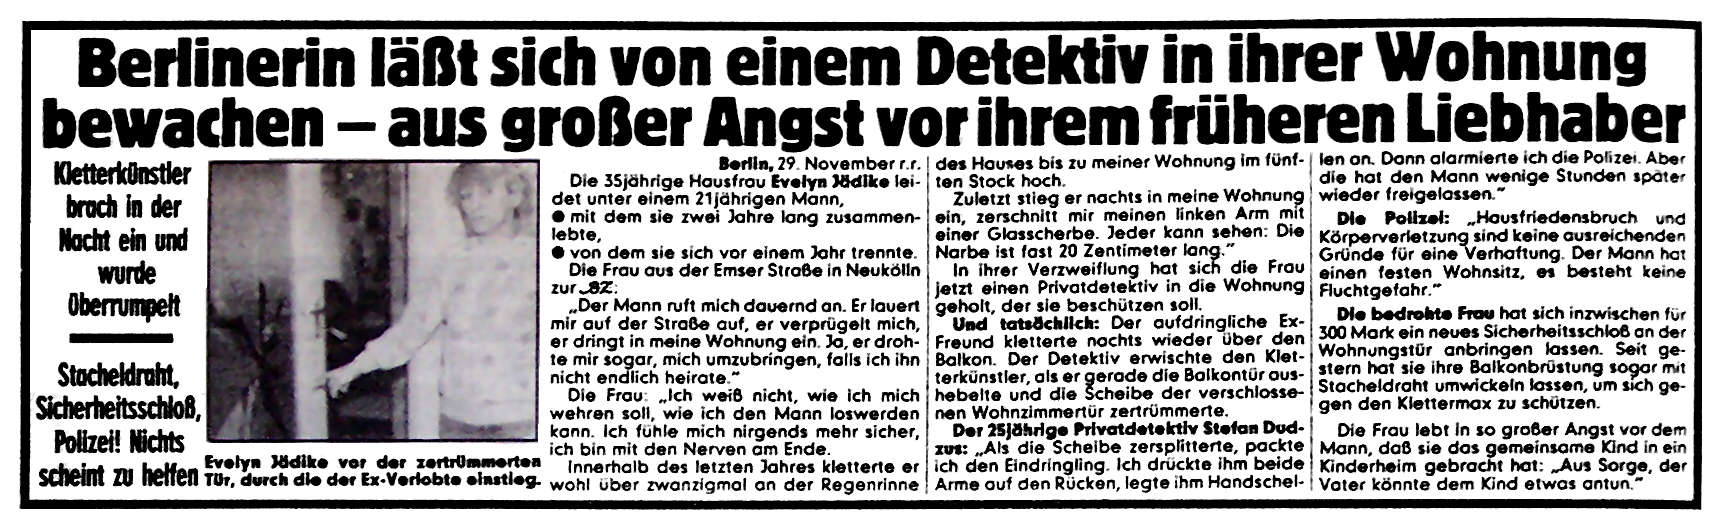 BZ-Zeitungsartikel 28 vom 29.11.1985: Gestalkte Berlinerin lässt sich von Detektiv beschützen